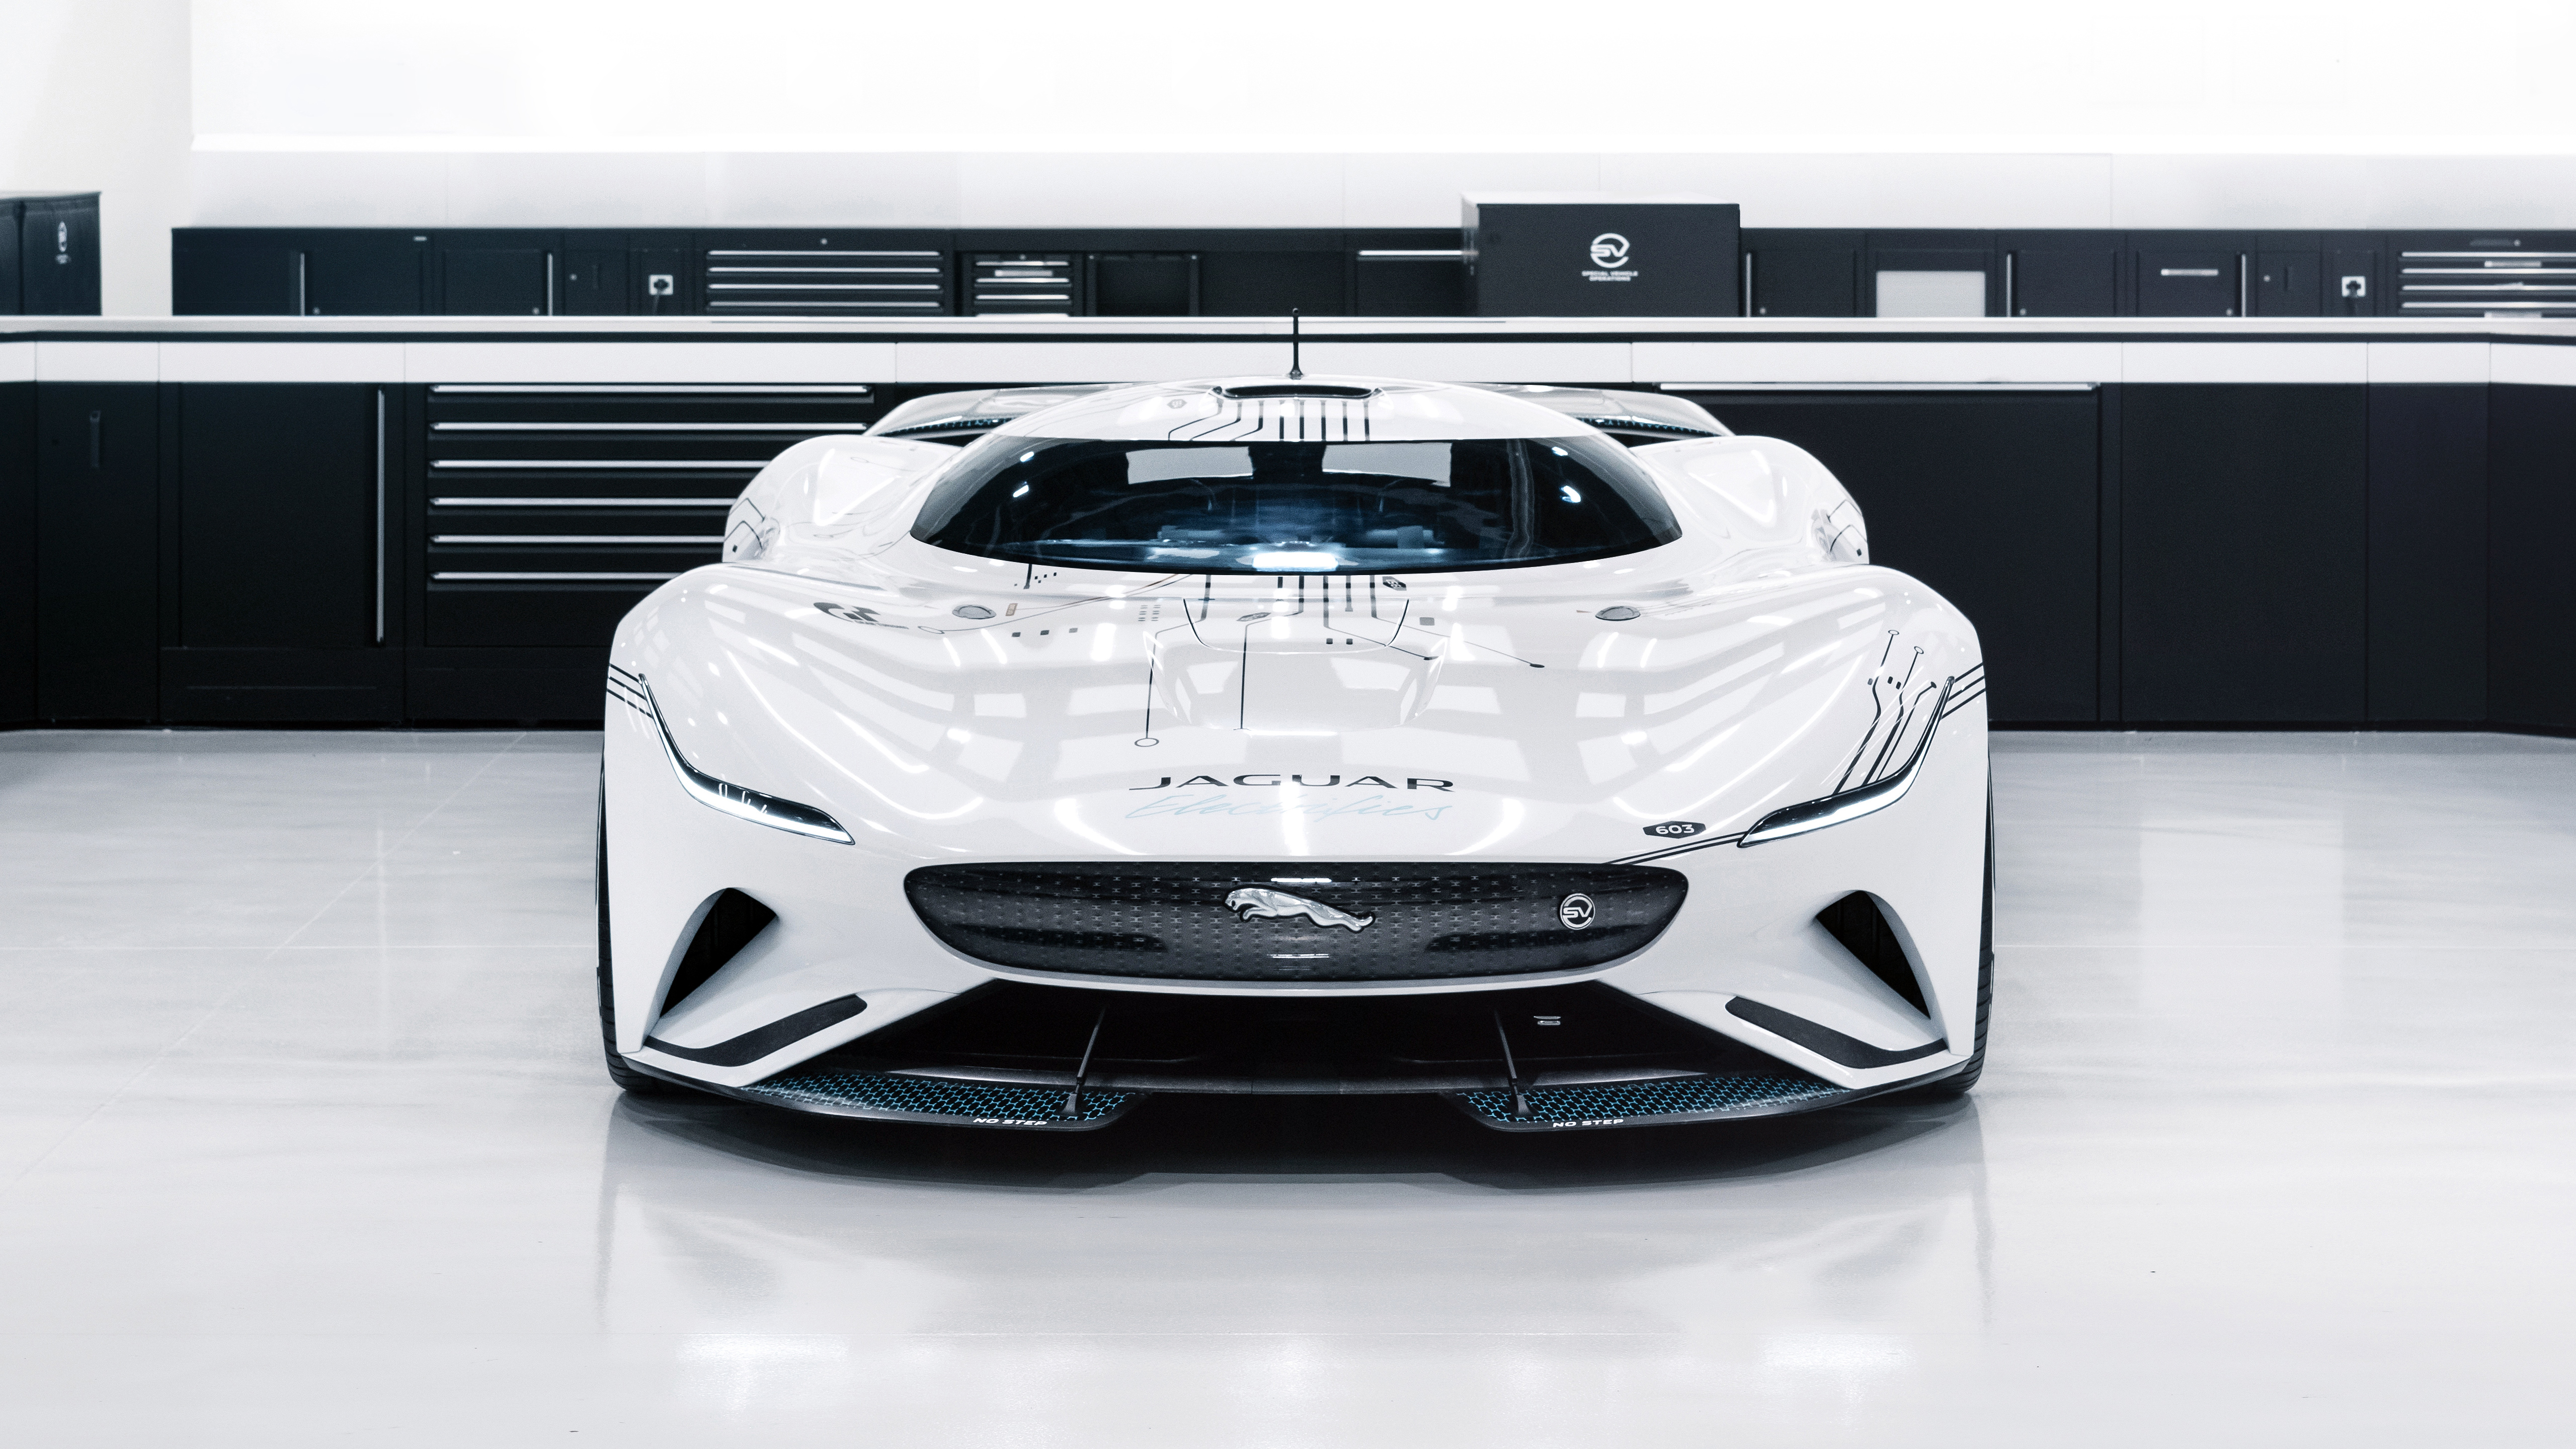 Jaguar Vision Gran Turismo Sv Wallpapers